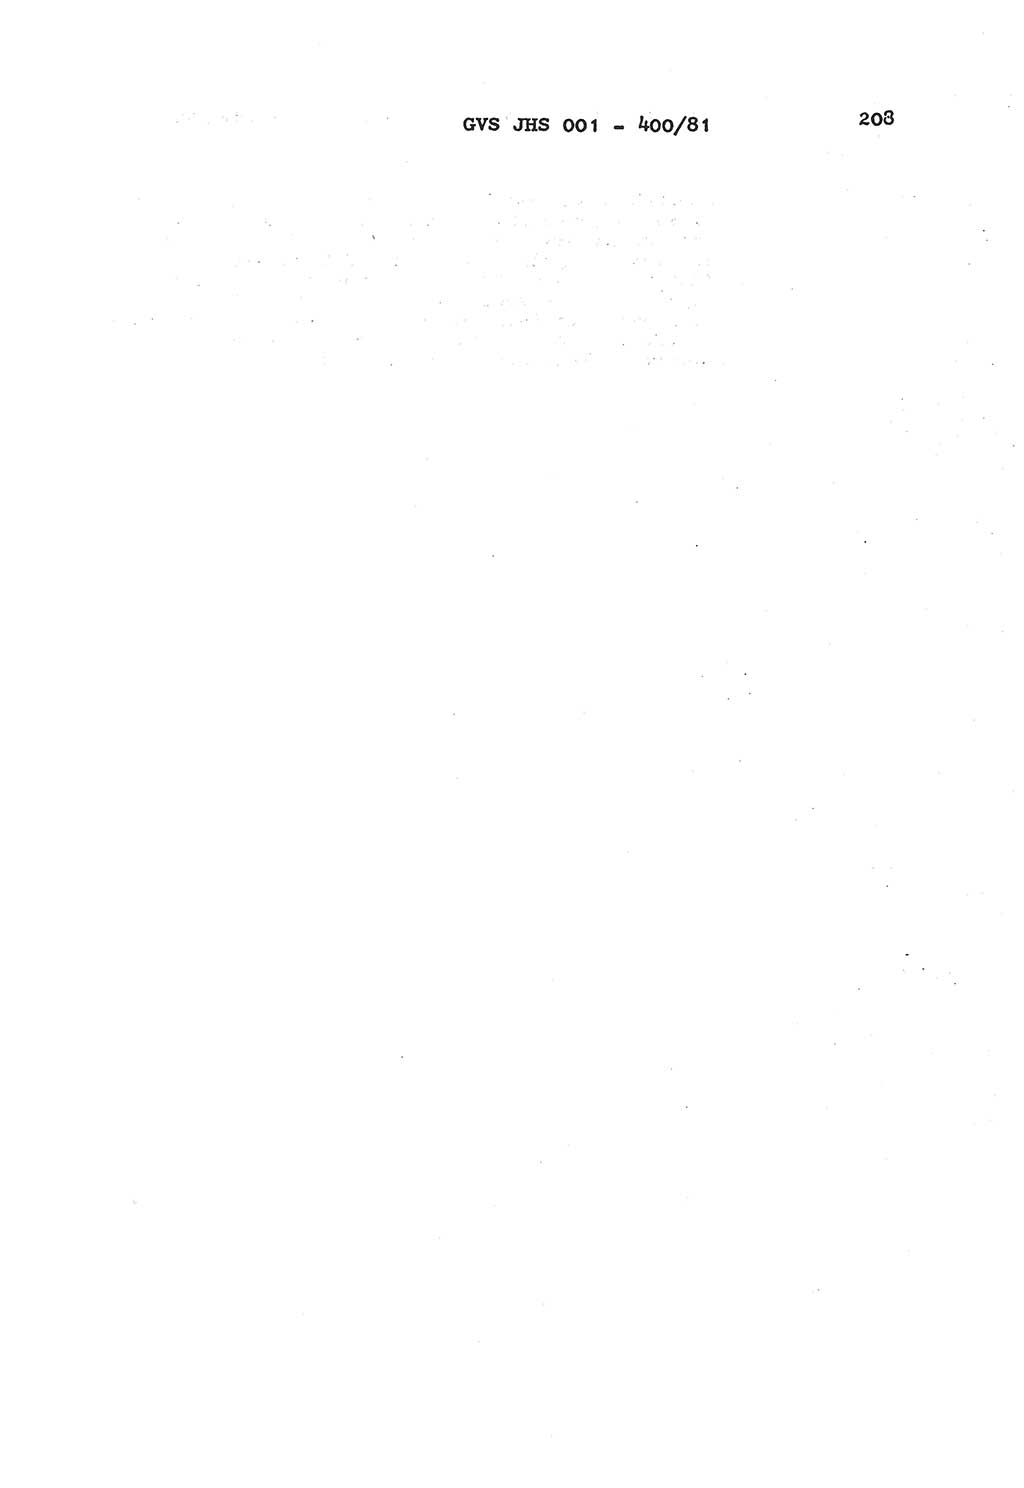 Wörterbuch der politisch-operativen Arbeit, Ministerium für Staatssicherheit (MfS) [Deutsche Demokratische Republik (DDR)], Juristische Hochschule (JHS), Geheime Verschlußsache (GVS) o001-400/81, Potsdam 1985, Blatt 208 (Wb. pol.-op. Arb. MfS DDR JHS GVS o001-400/81 1985, Bl. 208)